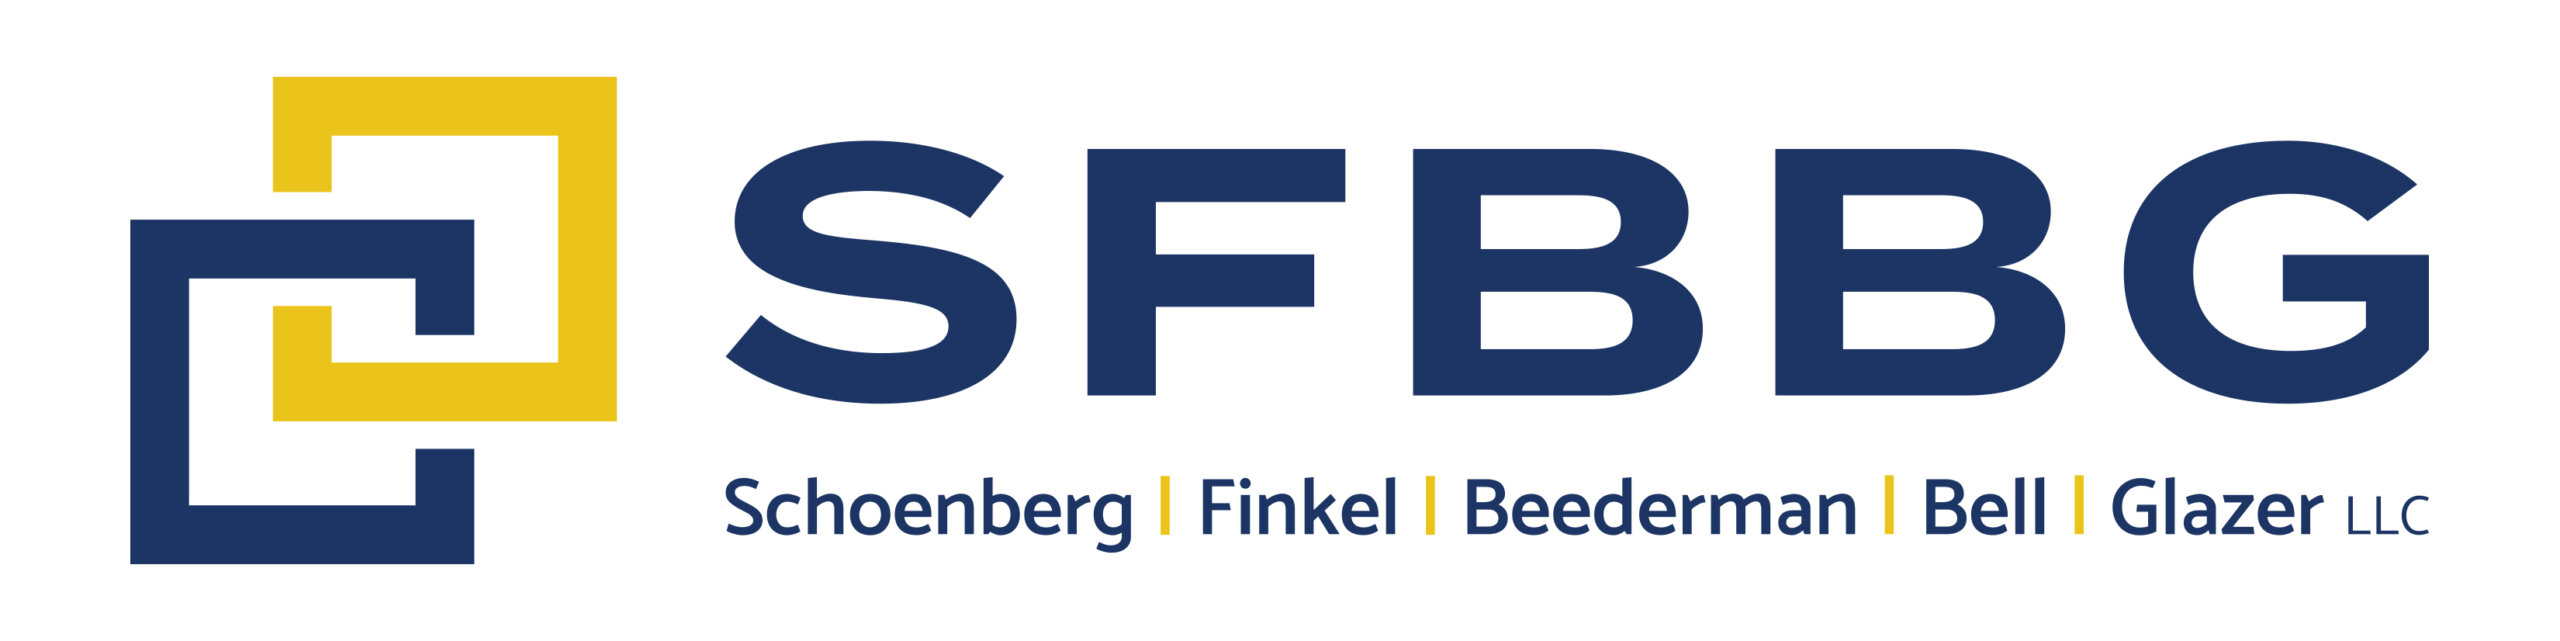 SFBBG LLC